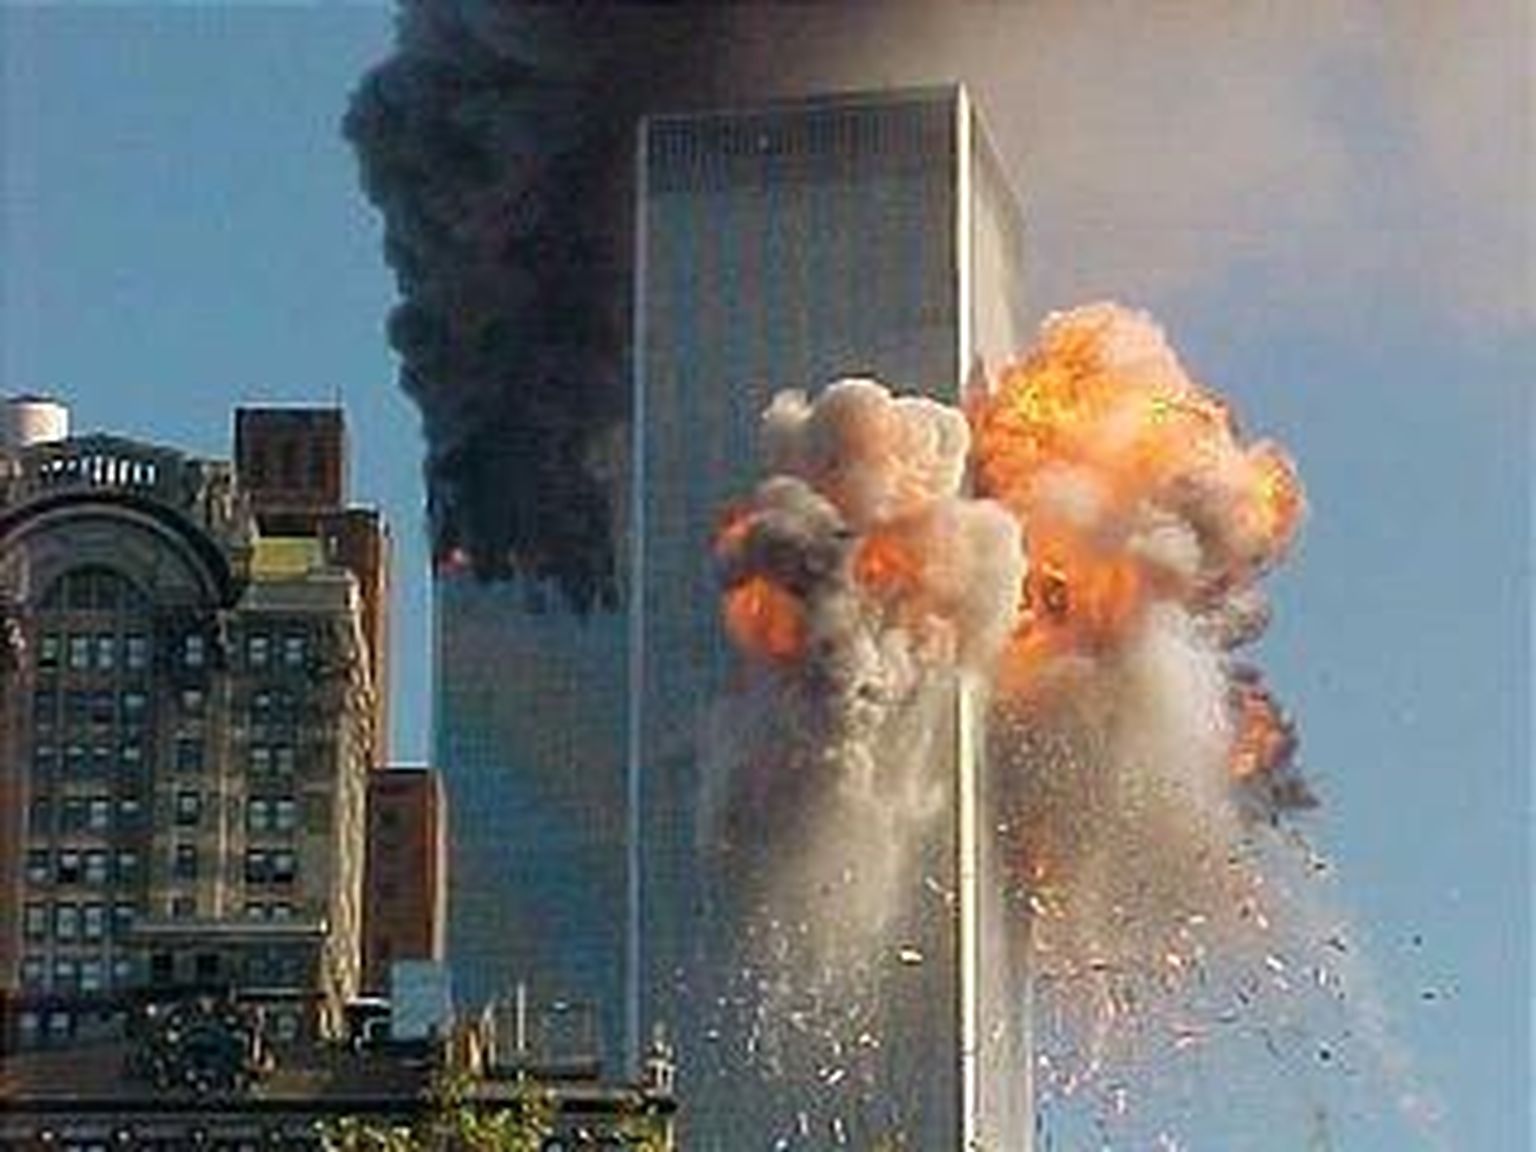 New Yorgis asunud Maailma Kaubanduskeskuse kaksiktornid peale terrorirünnakut ja enne kokkuvarisemist.